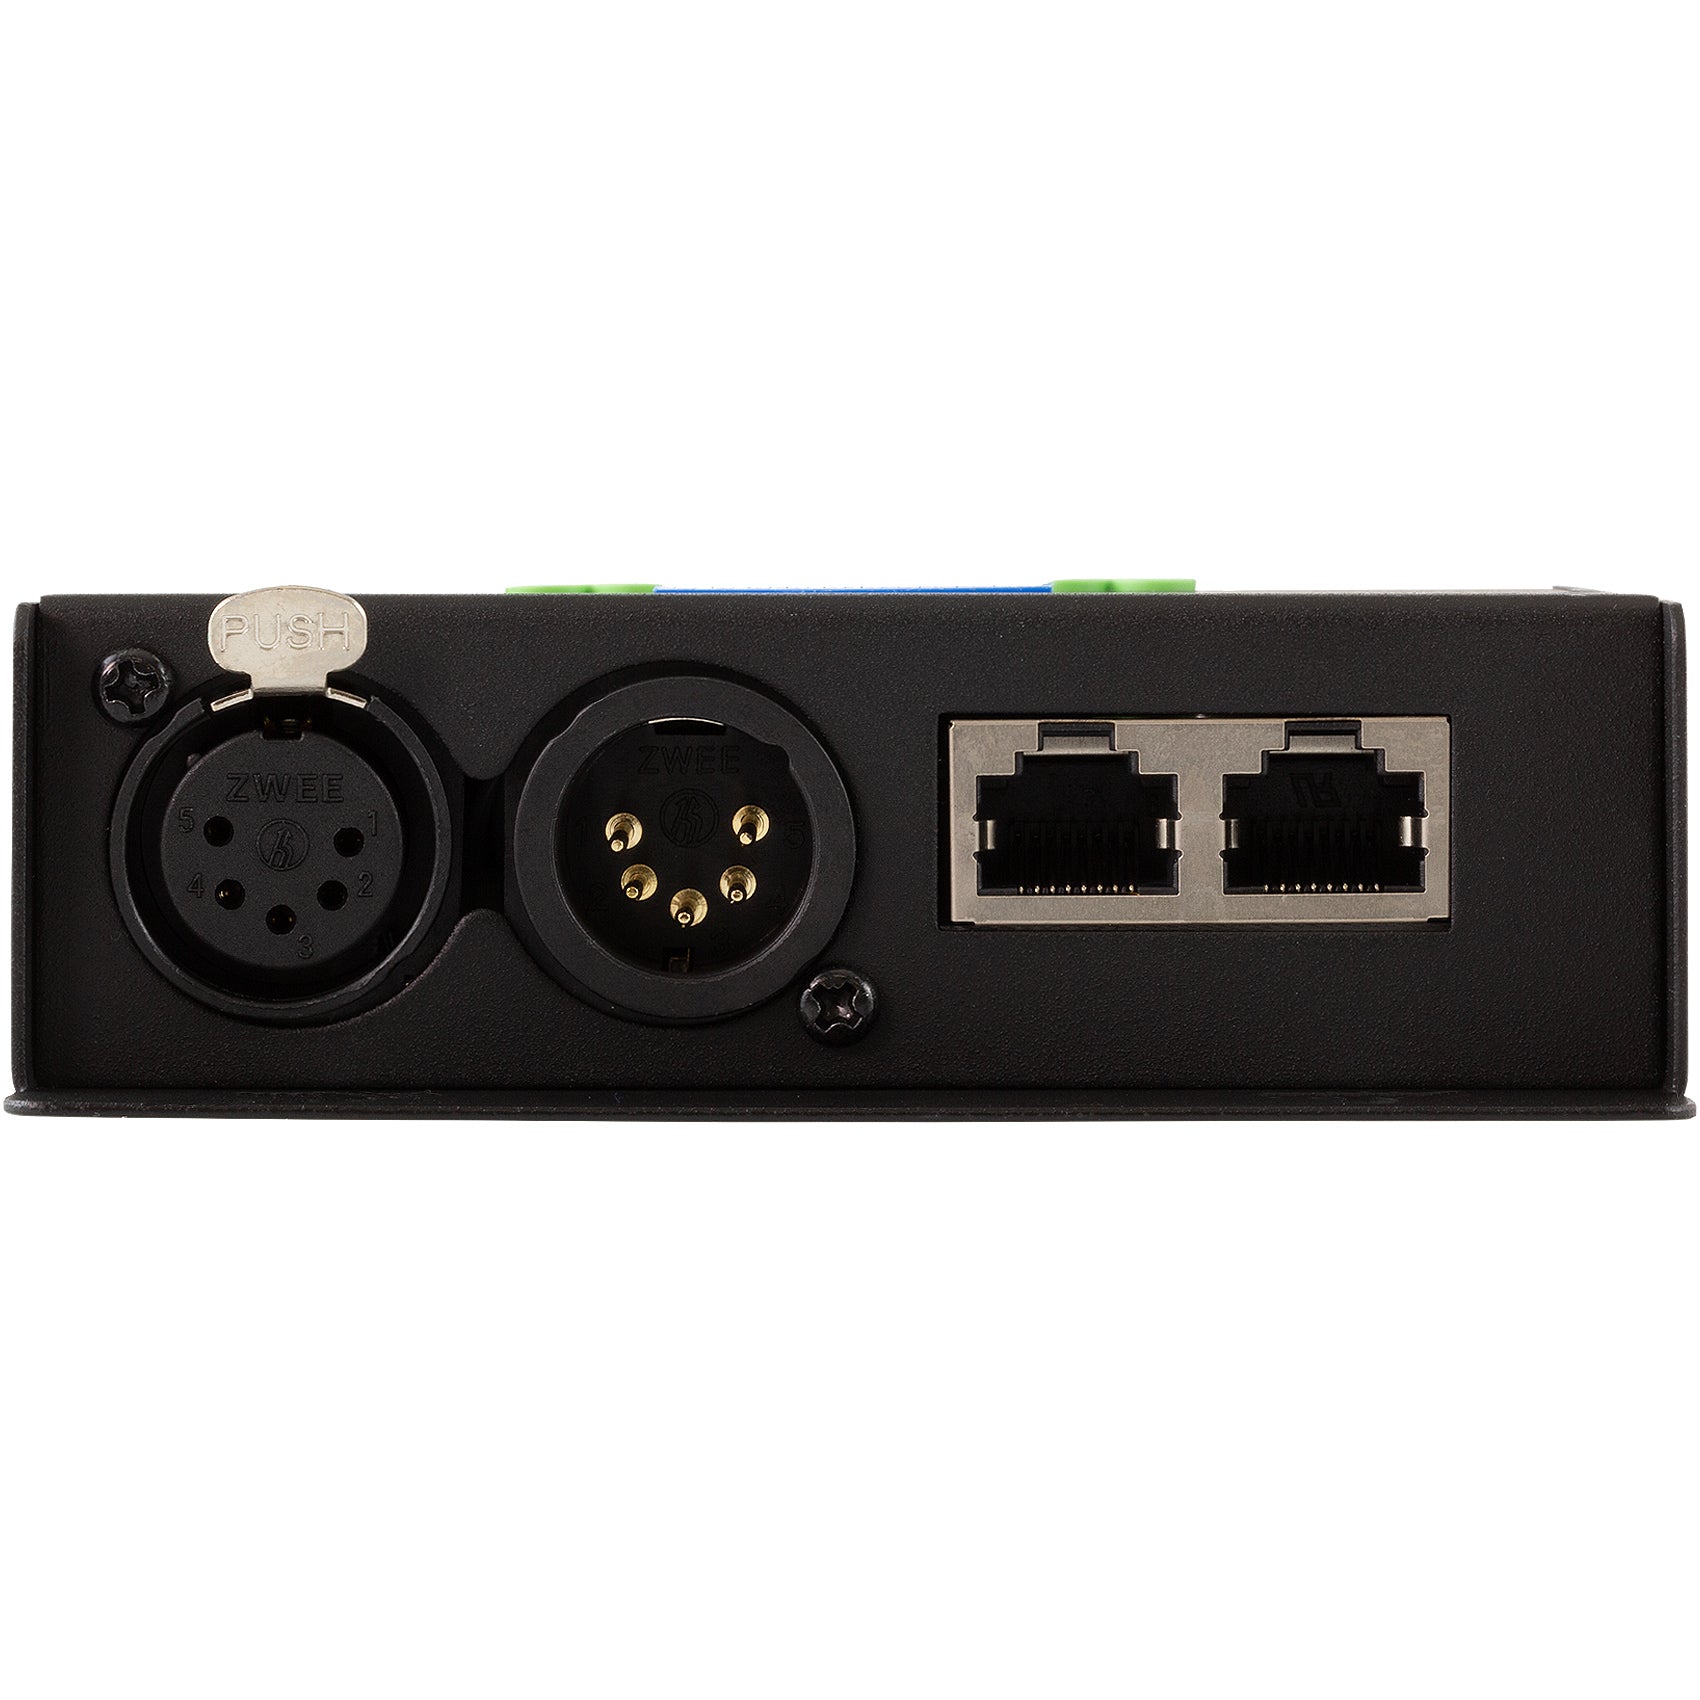 SIRS-E DMX-CON4V2 LED DMX Decoder 4 Channel RGB & RGBW Controller 10A/ –